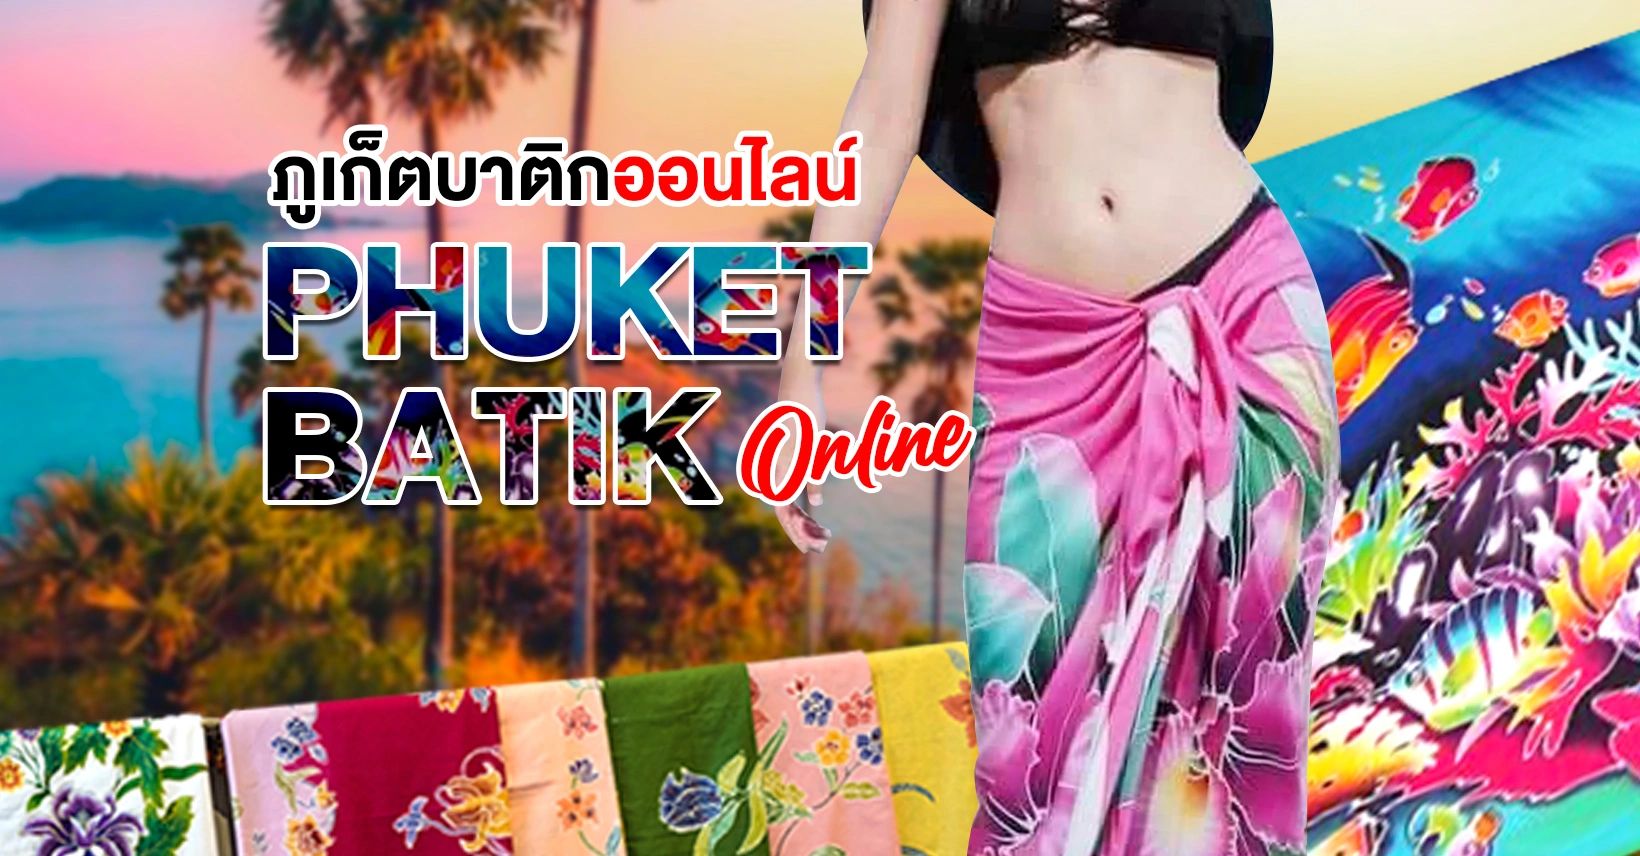 ภูเก็ตบาติกออนไลน์ | Phuket Batik Online | PhuketBatik.com | จำหน่ายผ้าบาติกภูเก็ตทุกชนิด